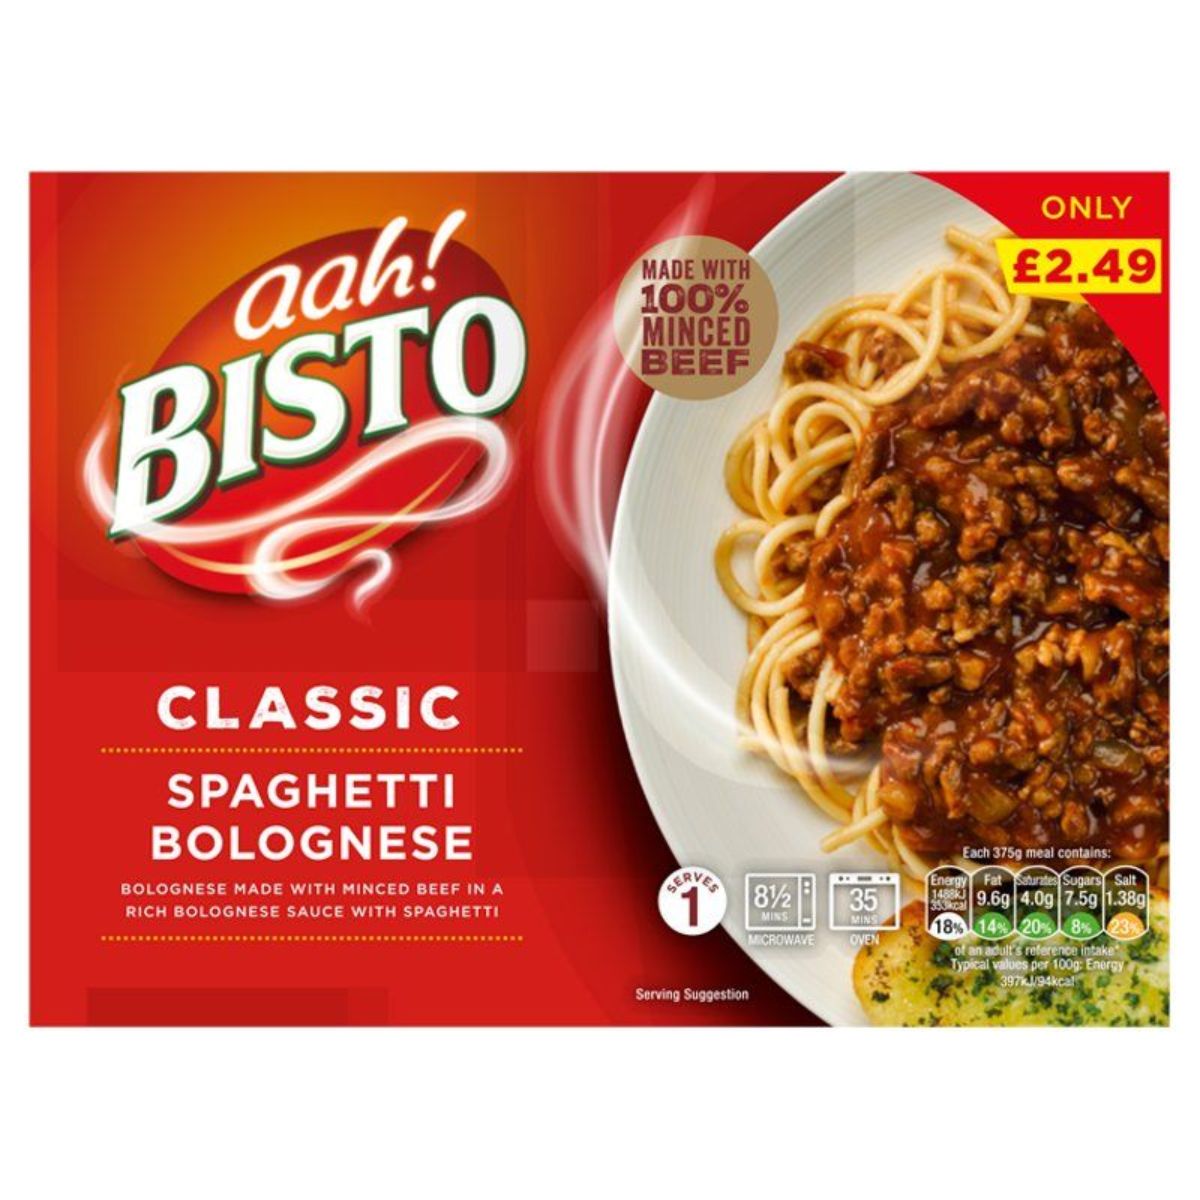 A box of Bisto - Classic Spaghetti Bolognese - 375g.